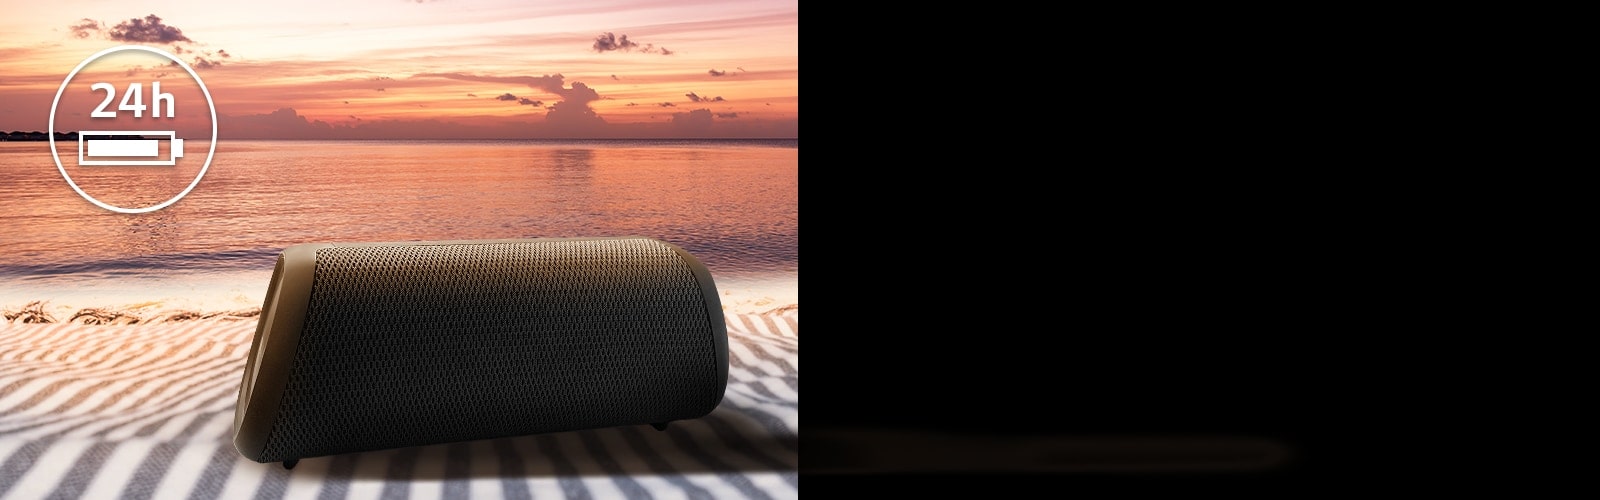 تم وضع مكبّر الصوت على منشفة الشاطئ. يظهر أمام مكبّر الصوت غروب الشمس على الشاطئ لتوضيح أنّه يمكن تشغيل مكبّر الصوت هذا لمدة تصل إلى 24 ساعة.